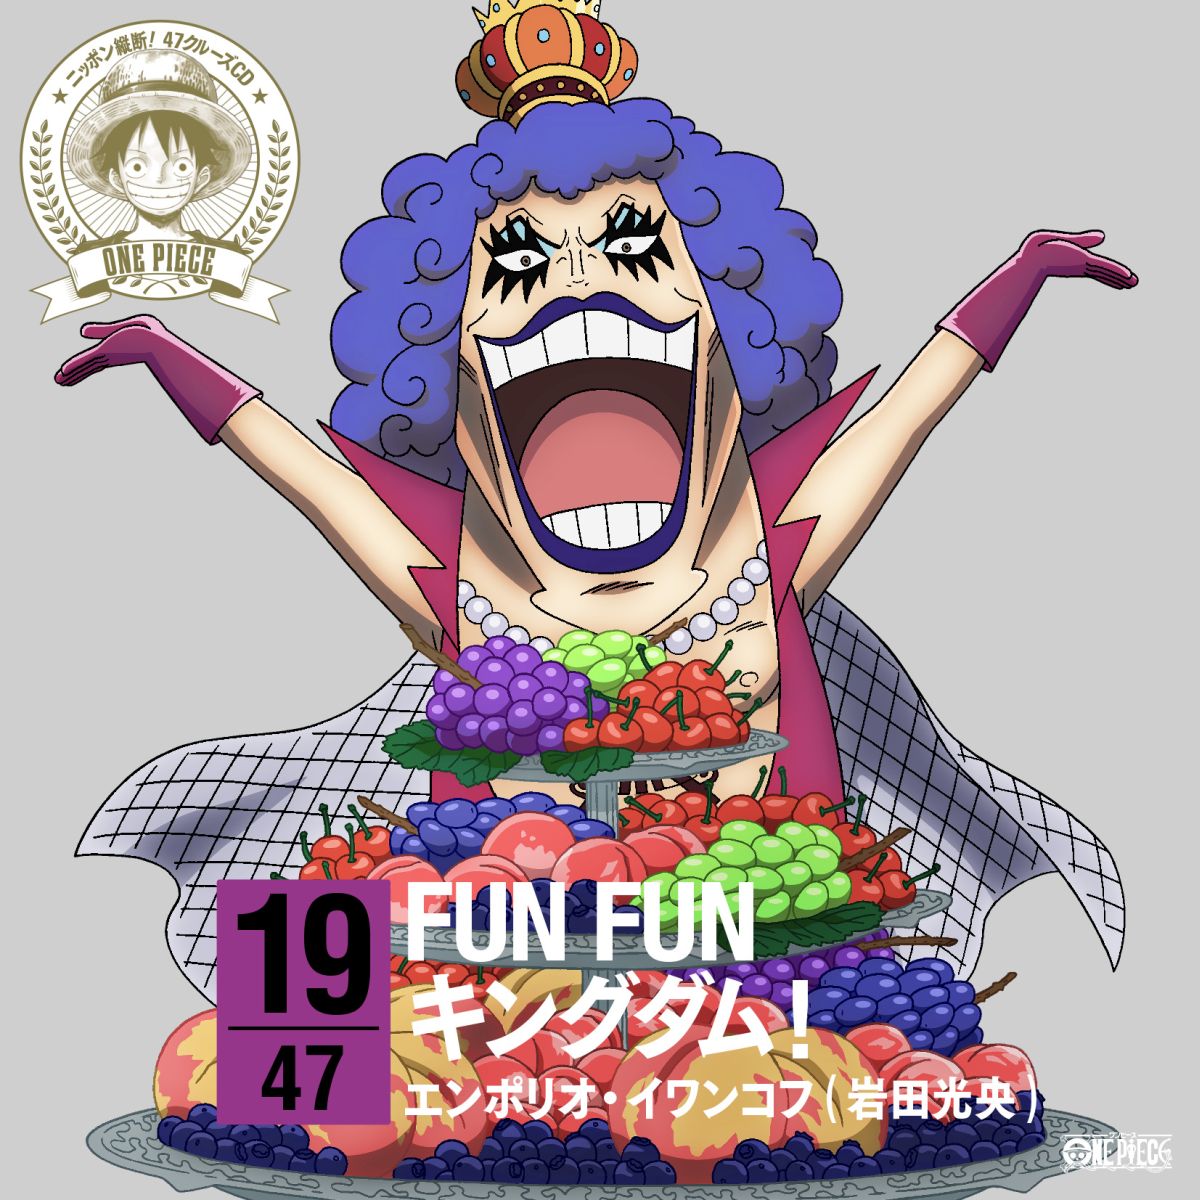 楽天ブックス One Piece ニッポン縦断 47クルーズcd In 山梨 Fun Funキングダム エンポリオ イワンコフ Cd